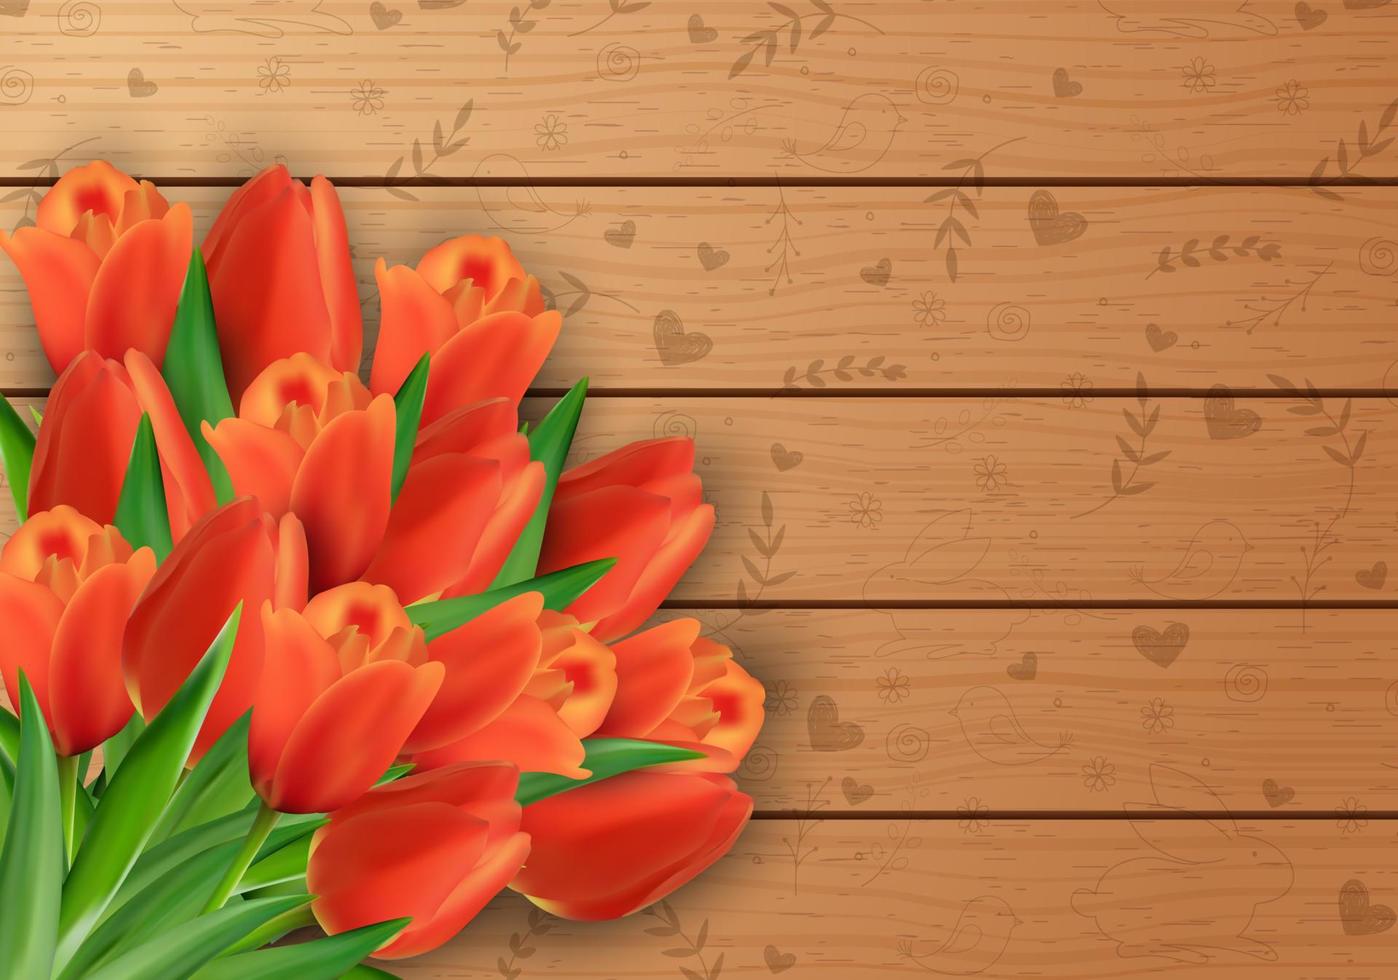 Vektor-Illustration von Tulpen Blumen auf einem hölzernen Hintergrund vektor